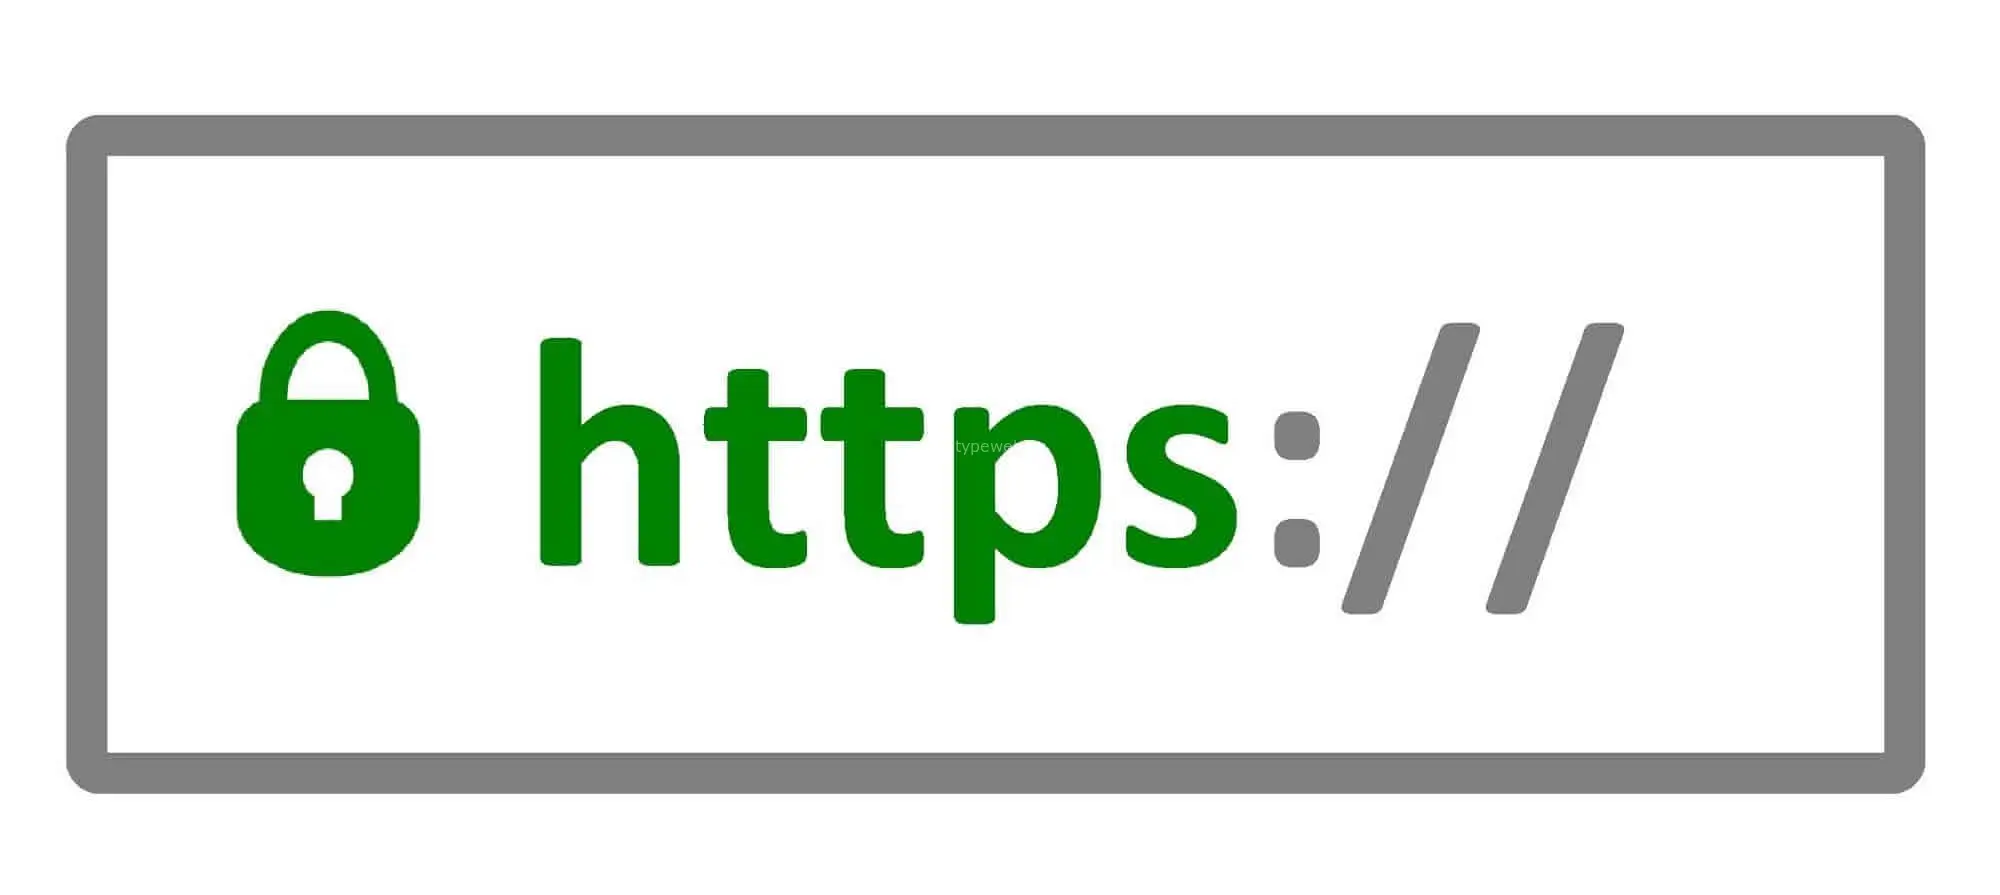 Защищенные сайты https. SSL сертификат. SSL логотип. Защищенное соединение SSL. Защищенное соединение значок.